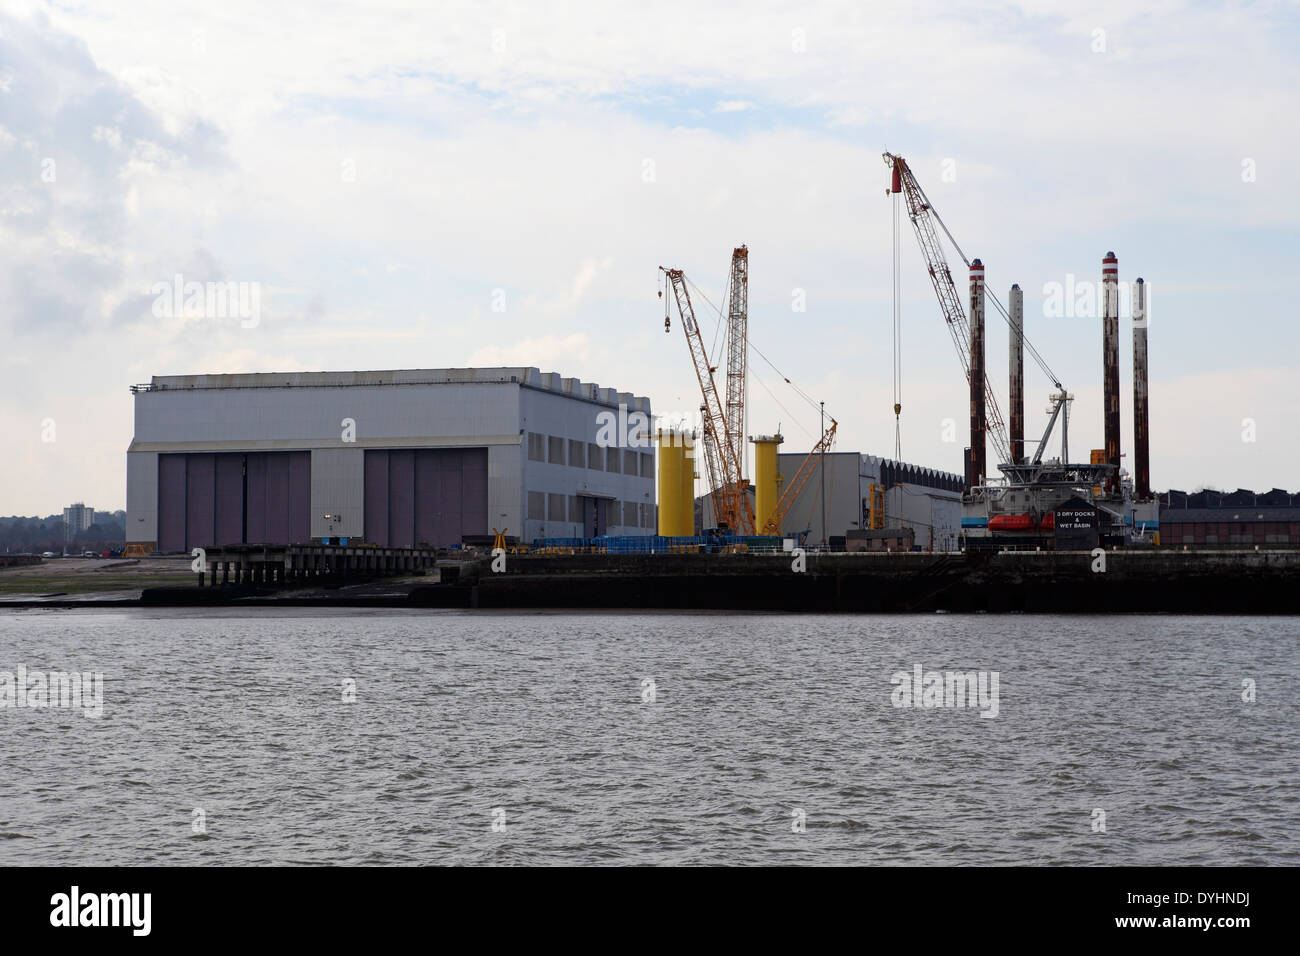 Le chantier naval Cammell Laird à Birkenhead, Royaume-Uni. Banque D'Images